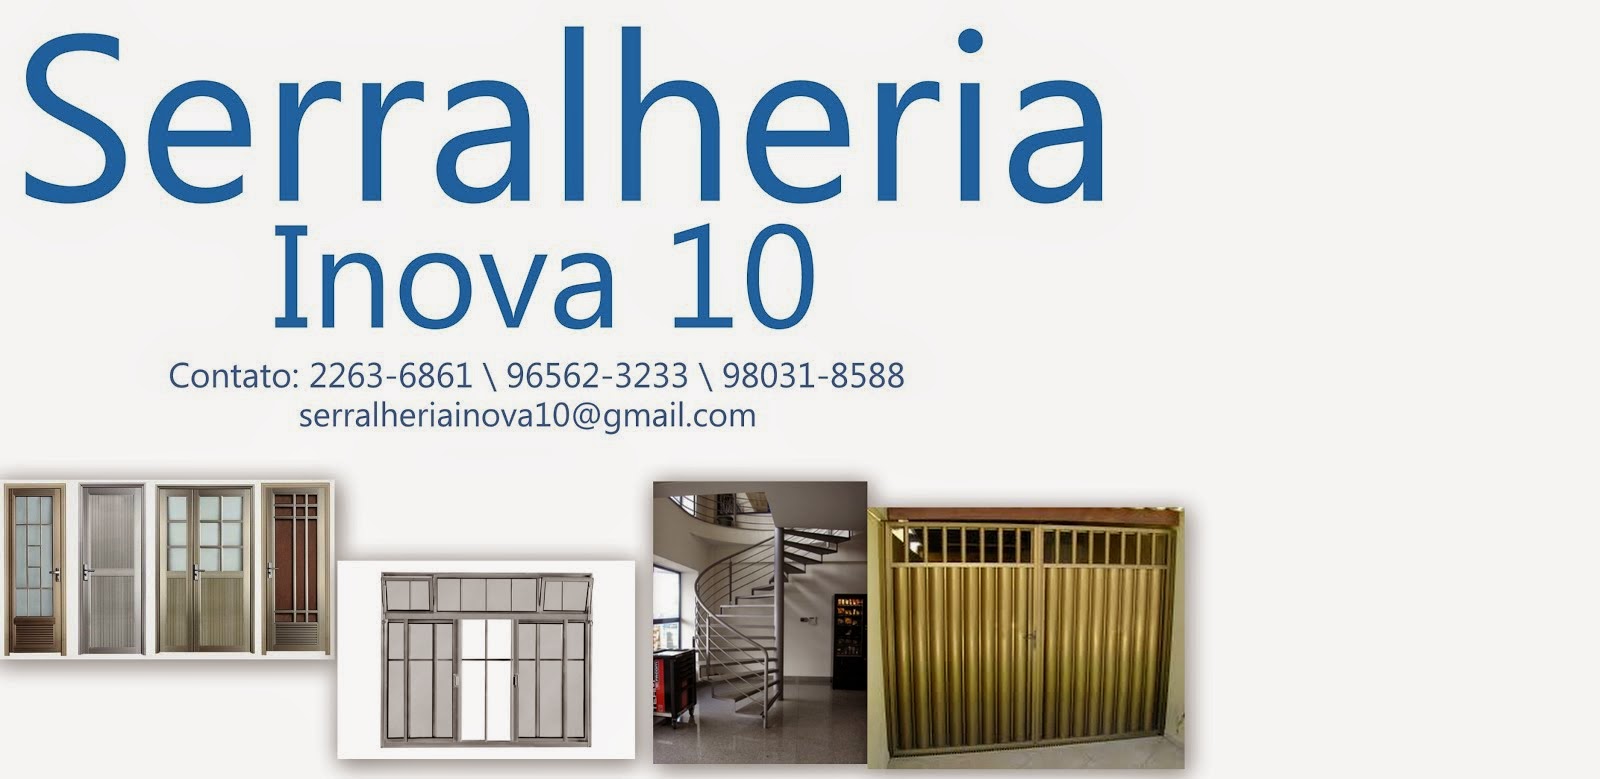 Serralheria Inova 10